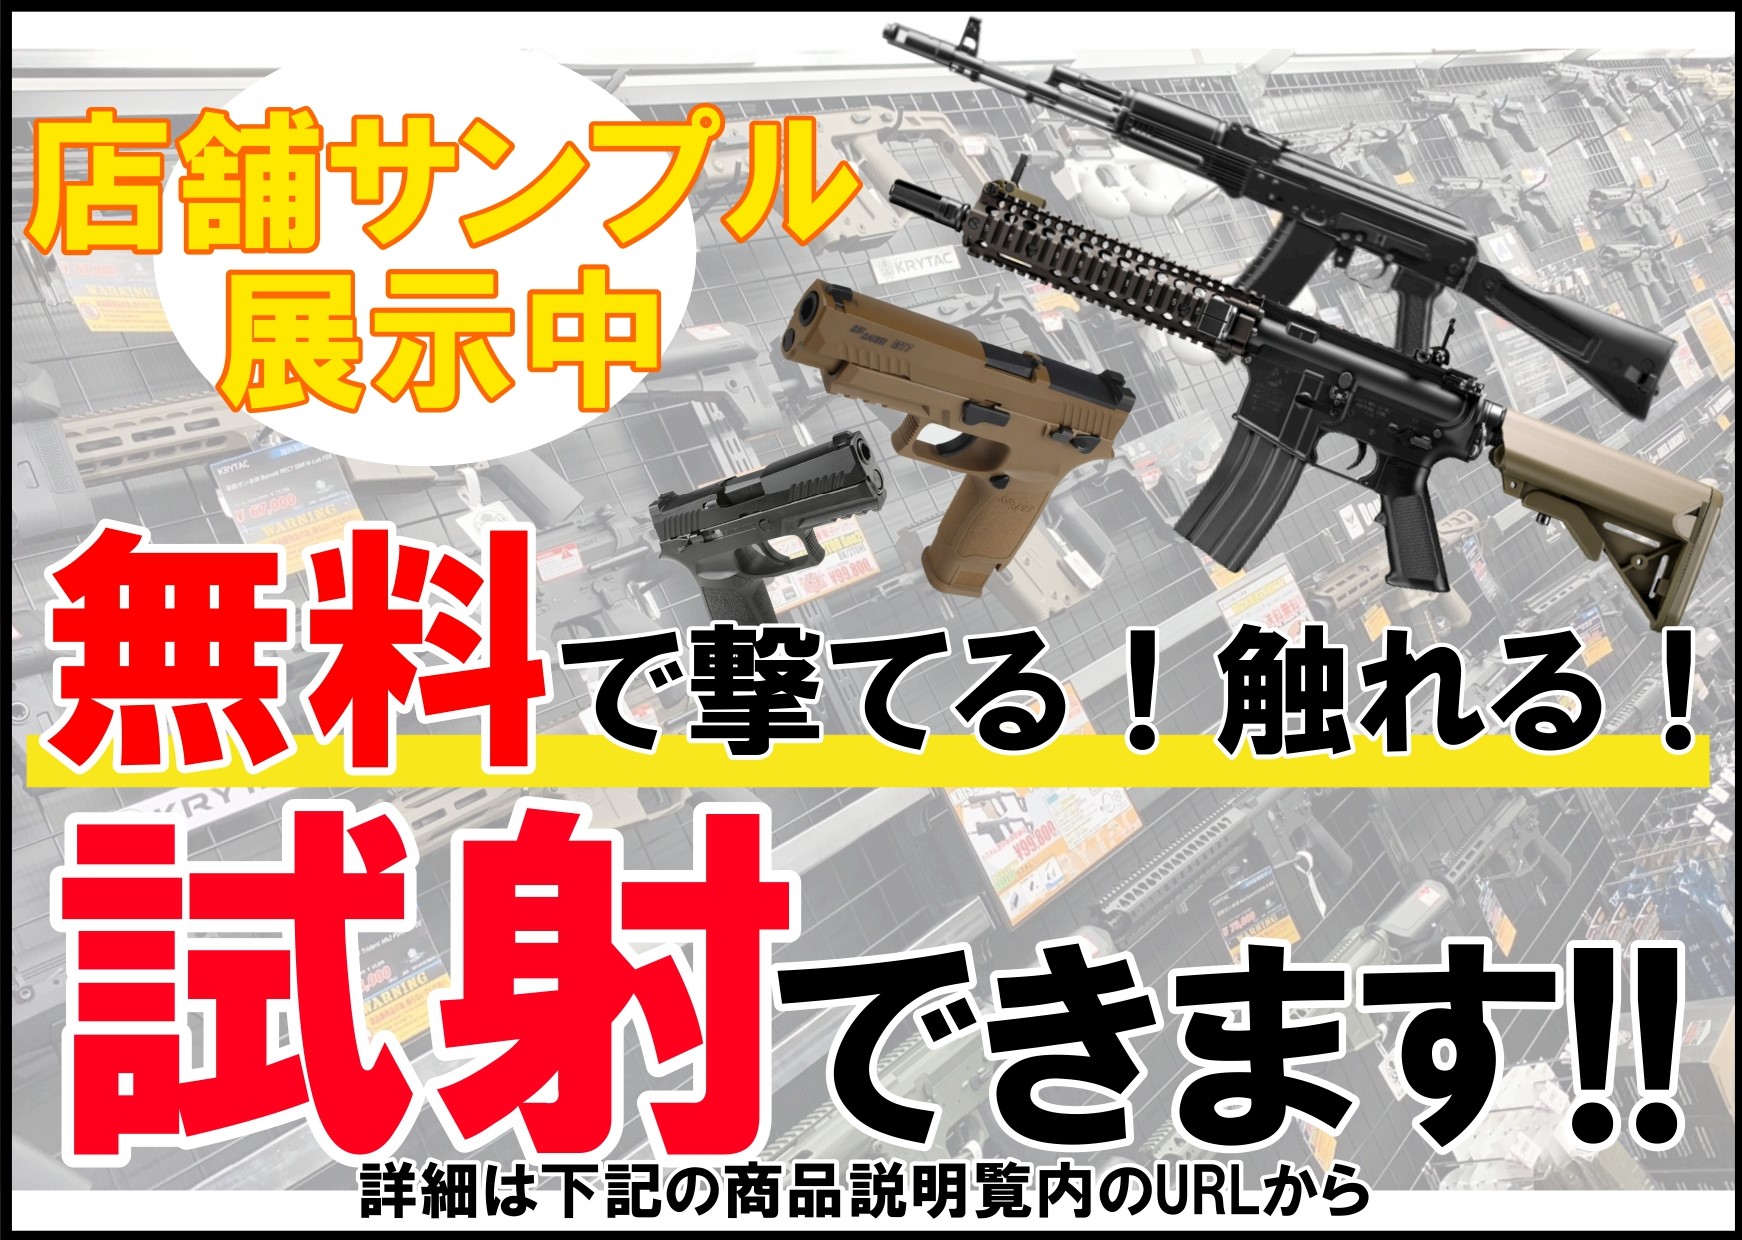 東京マルイ: 次世代電動ガン本体 HK416D DEVGRUの通販情報 - フォート 